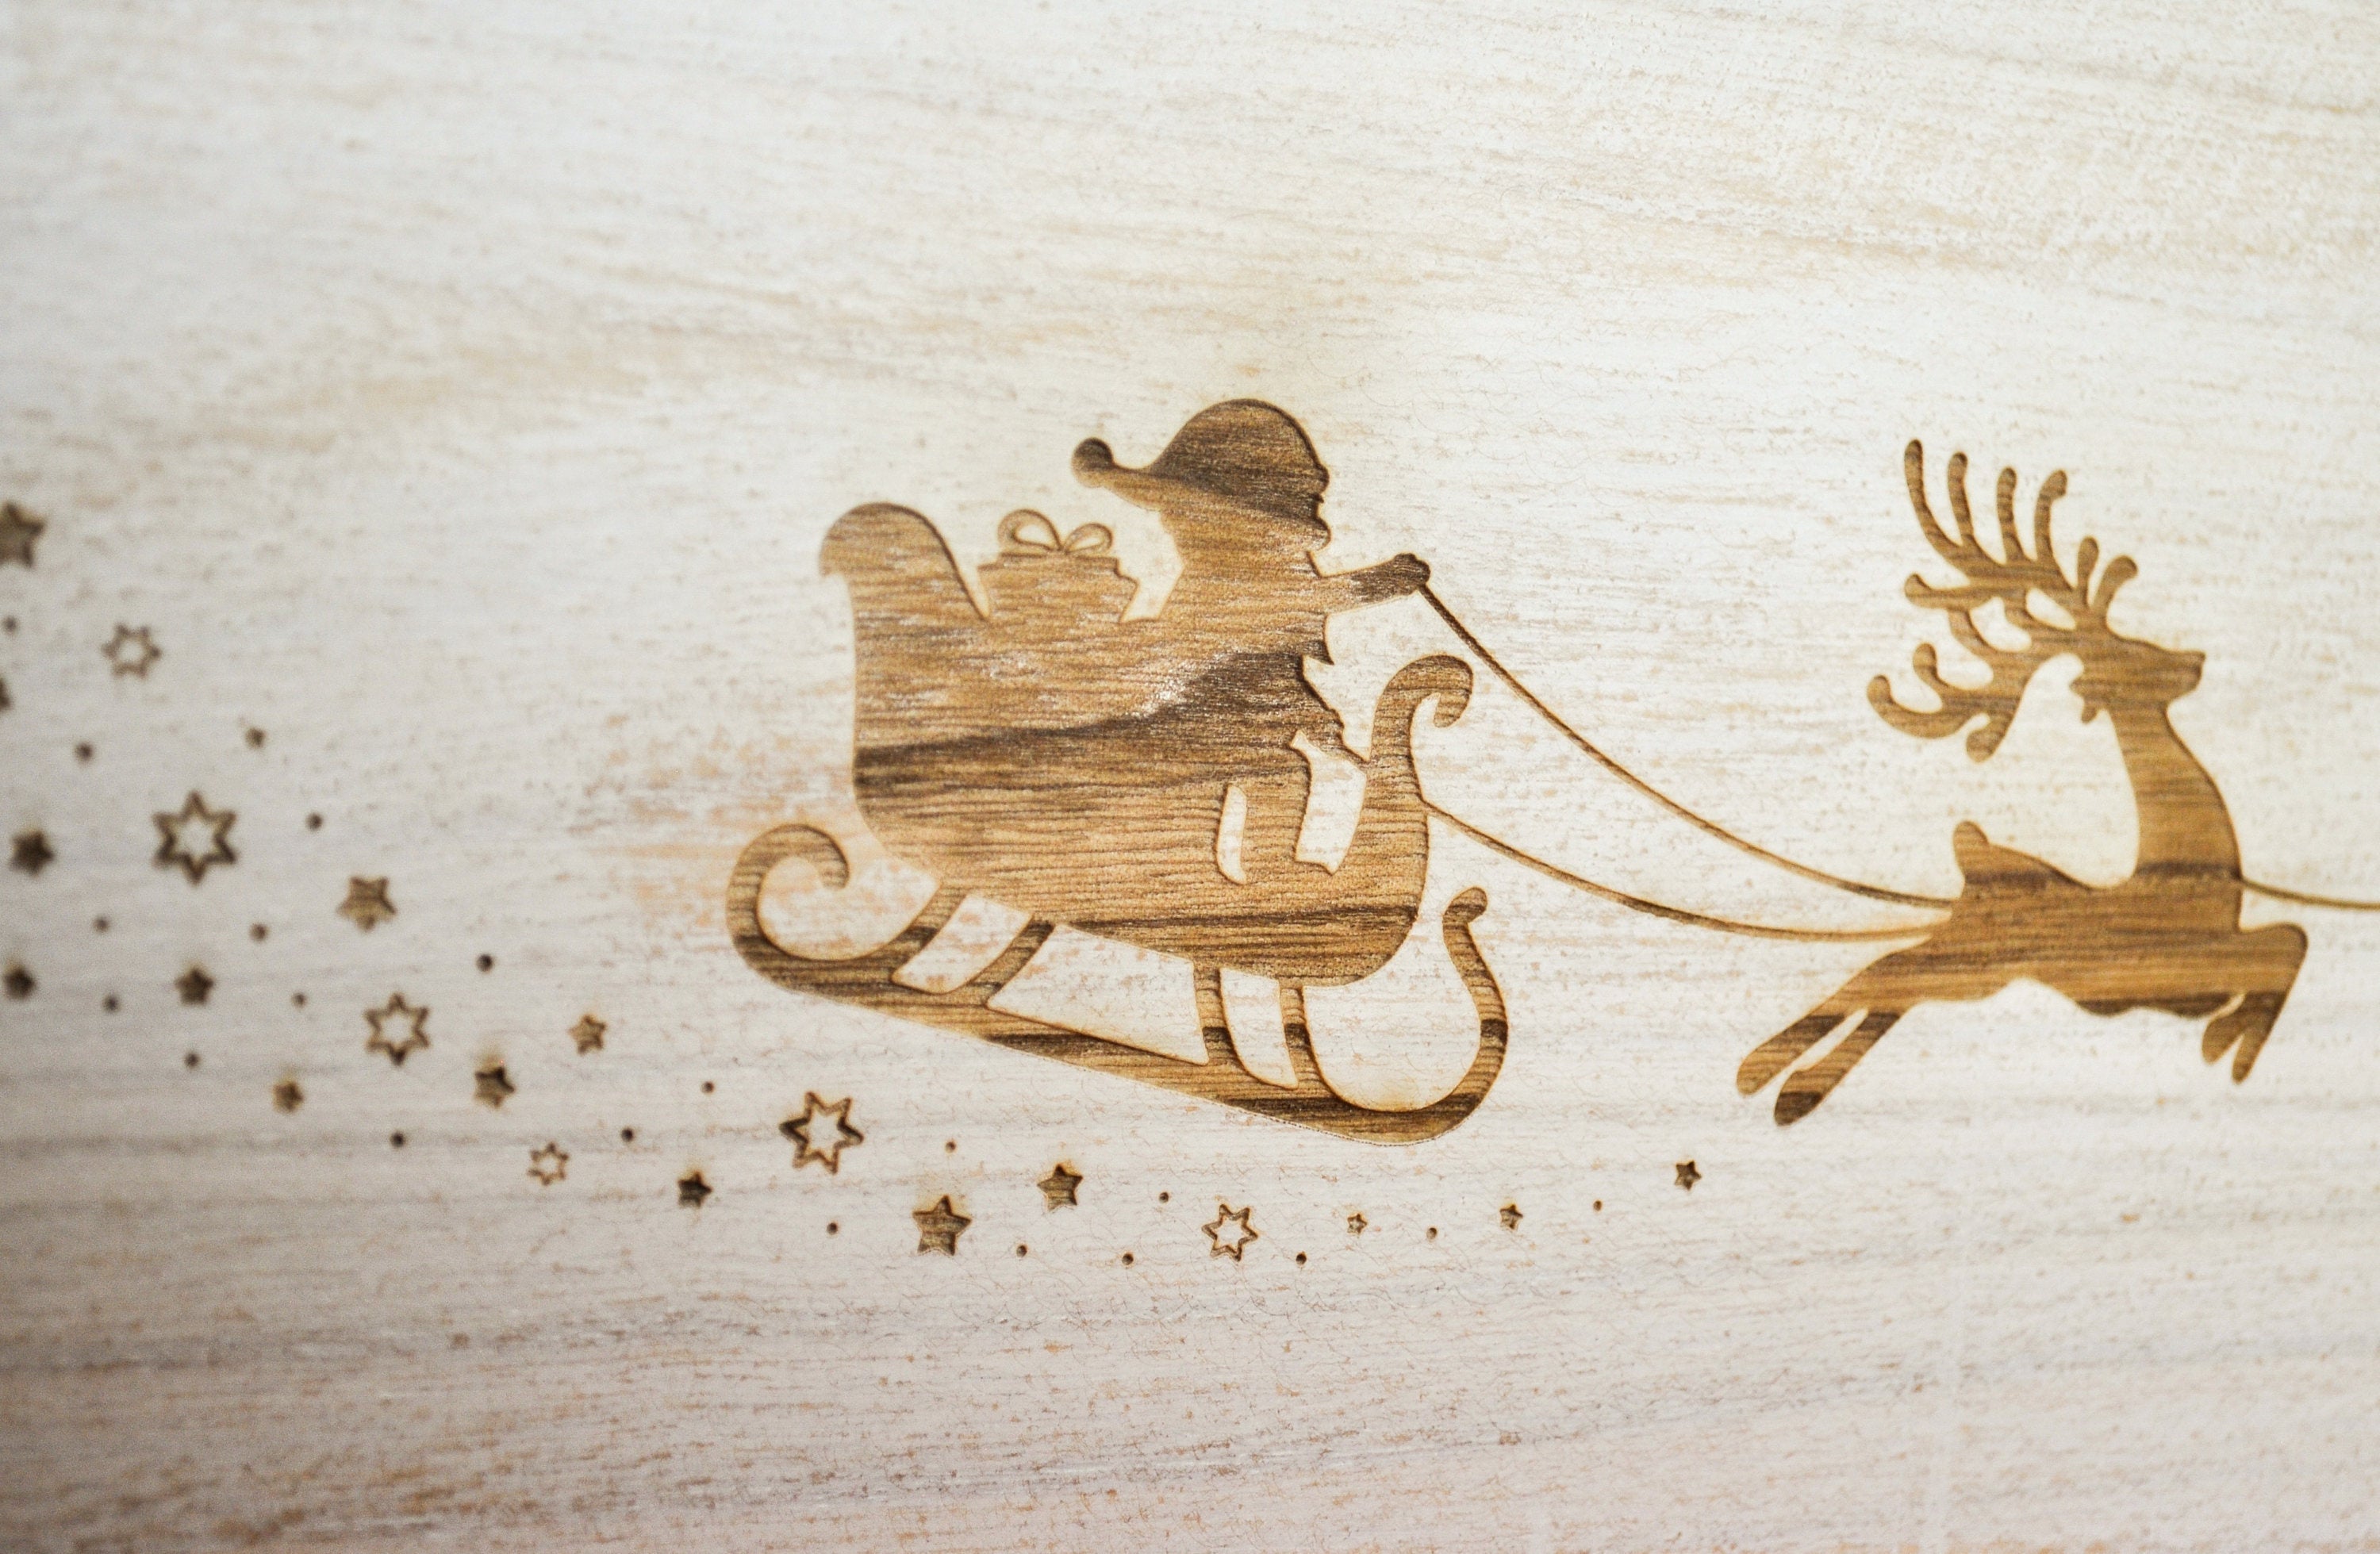 Engraved Christmas Eve Box - Personalised Santa Sleigh & Reindeer Design